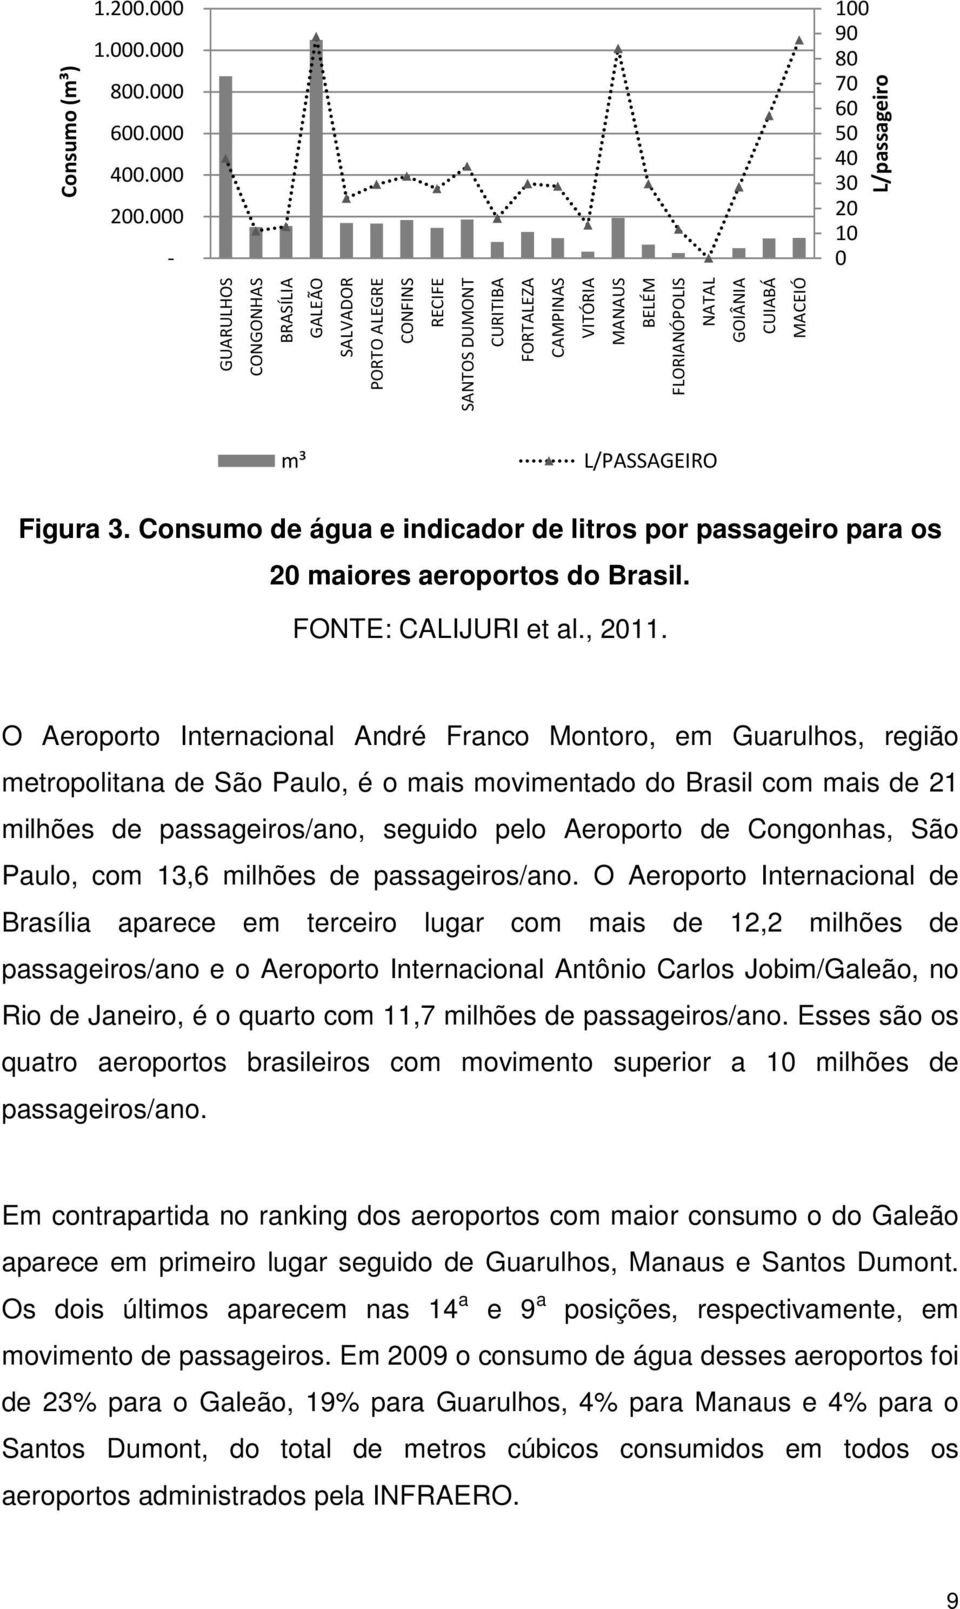 NATAL GOIÂNIA CUIABÁ MACEIÓ m³ L/PASSAGEIRO Figura 3. Consumo de água e indicador de litros por passageiro para os 20 maiores aeroportos do Brasil. FONTE: CALIJURI et al., 2011.